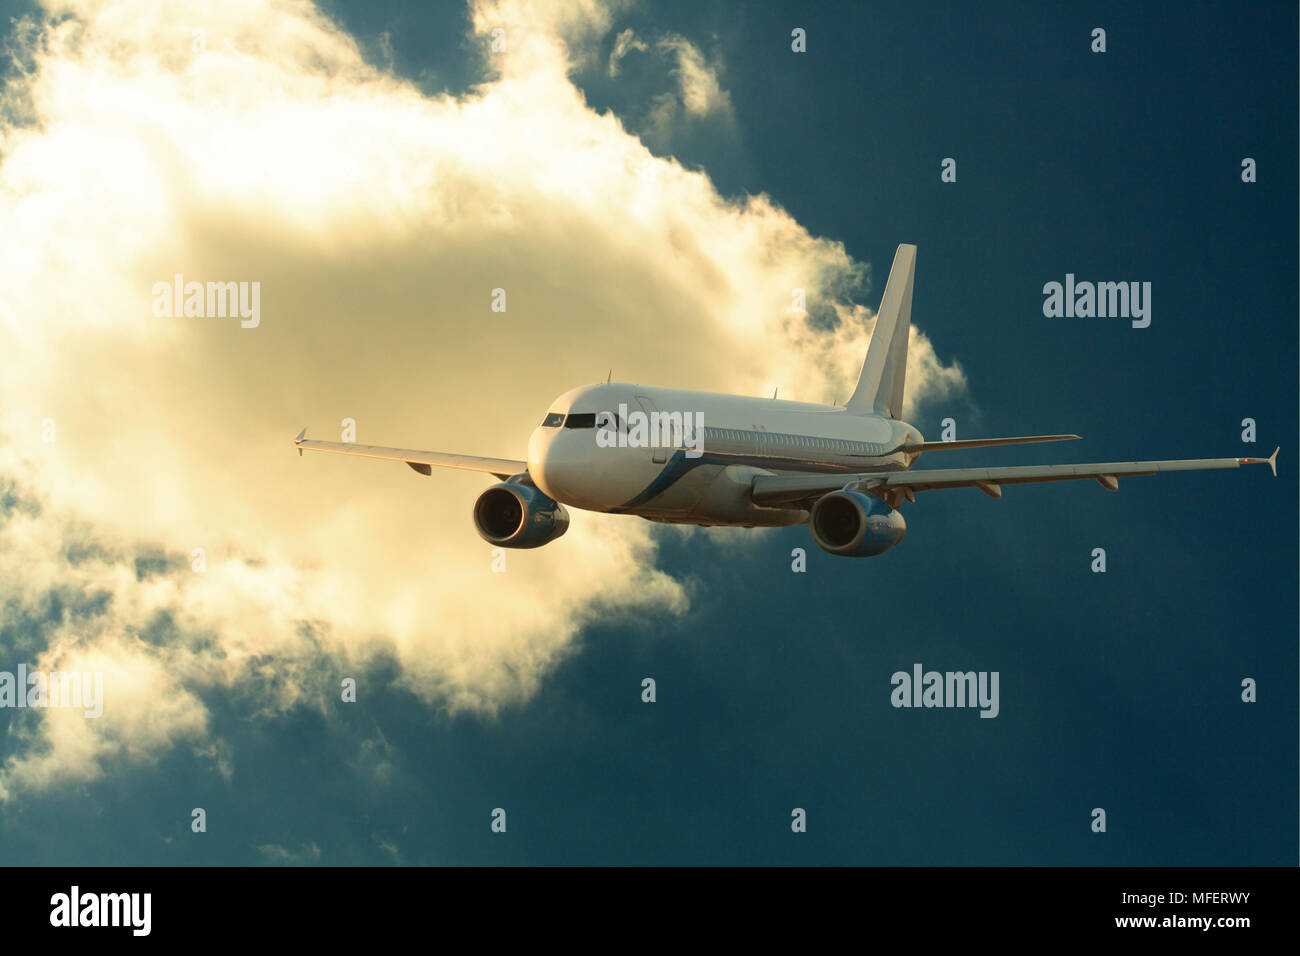 Aereo passeggeri su sfondo scuro con il cielo al tramonto e nuvole Foto Stock